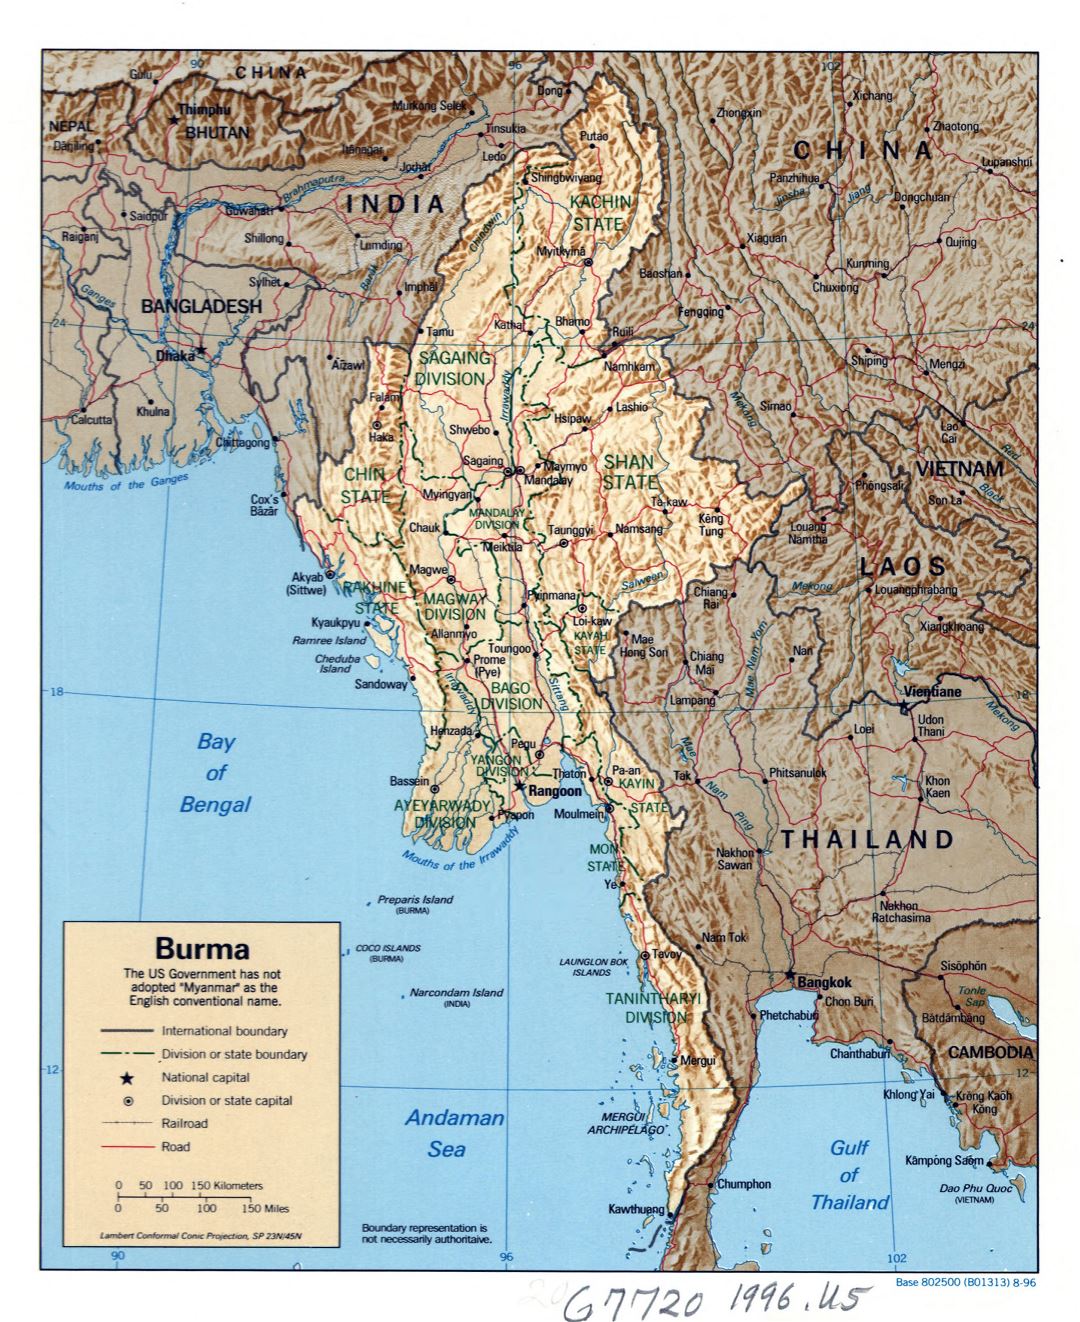 Grande detallado mapa político y administrativo de Birmania (Myanmar) con socorro, carreteras, ferrocarriles y principales ciudades - 1996